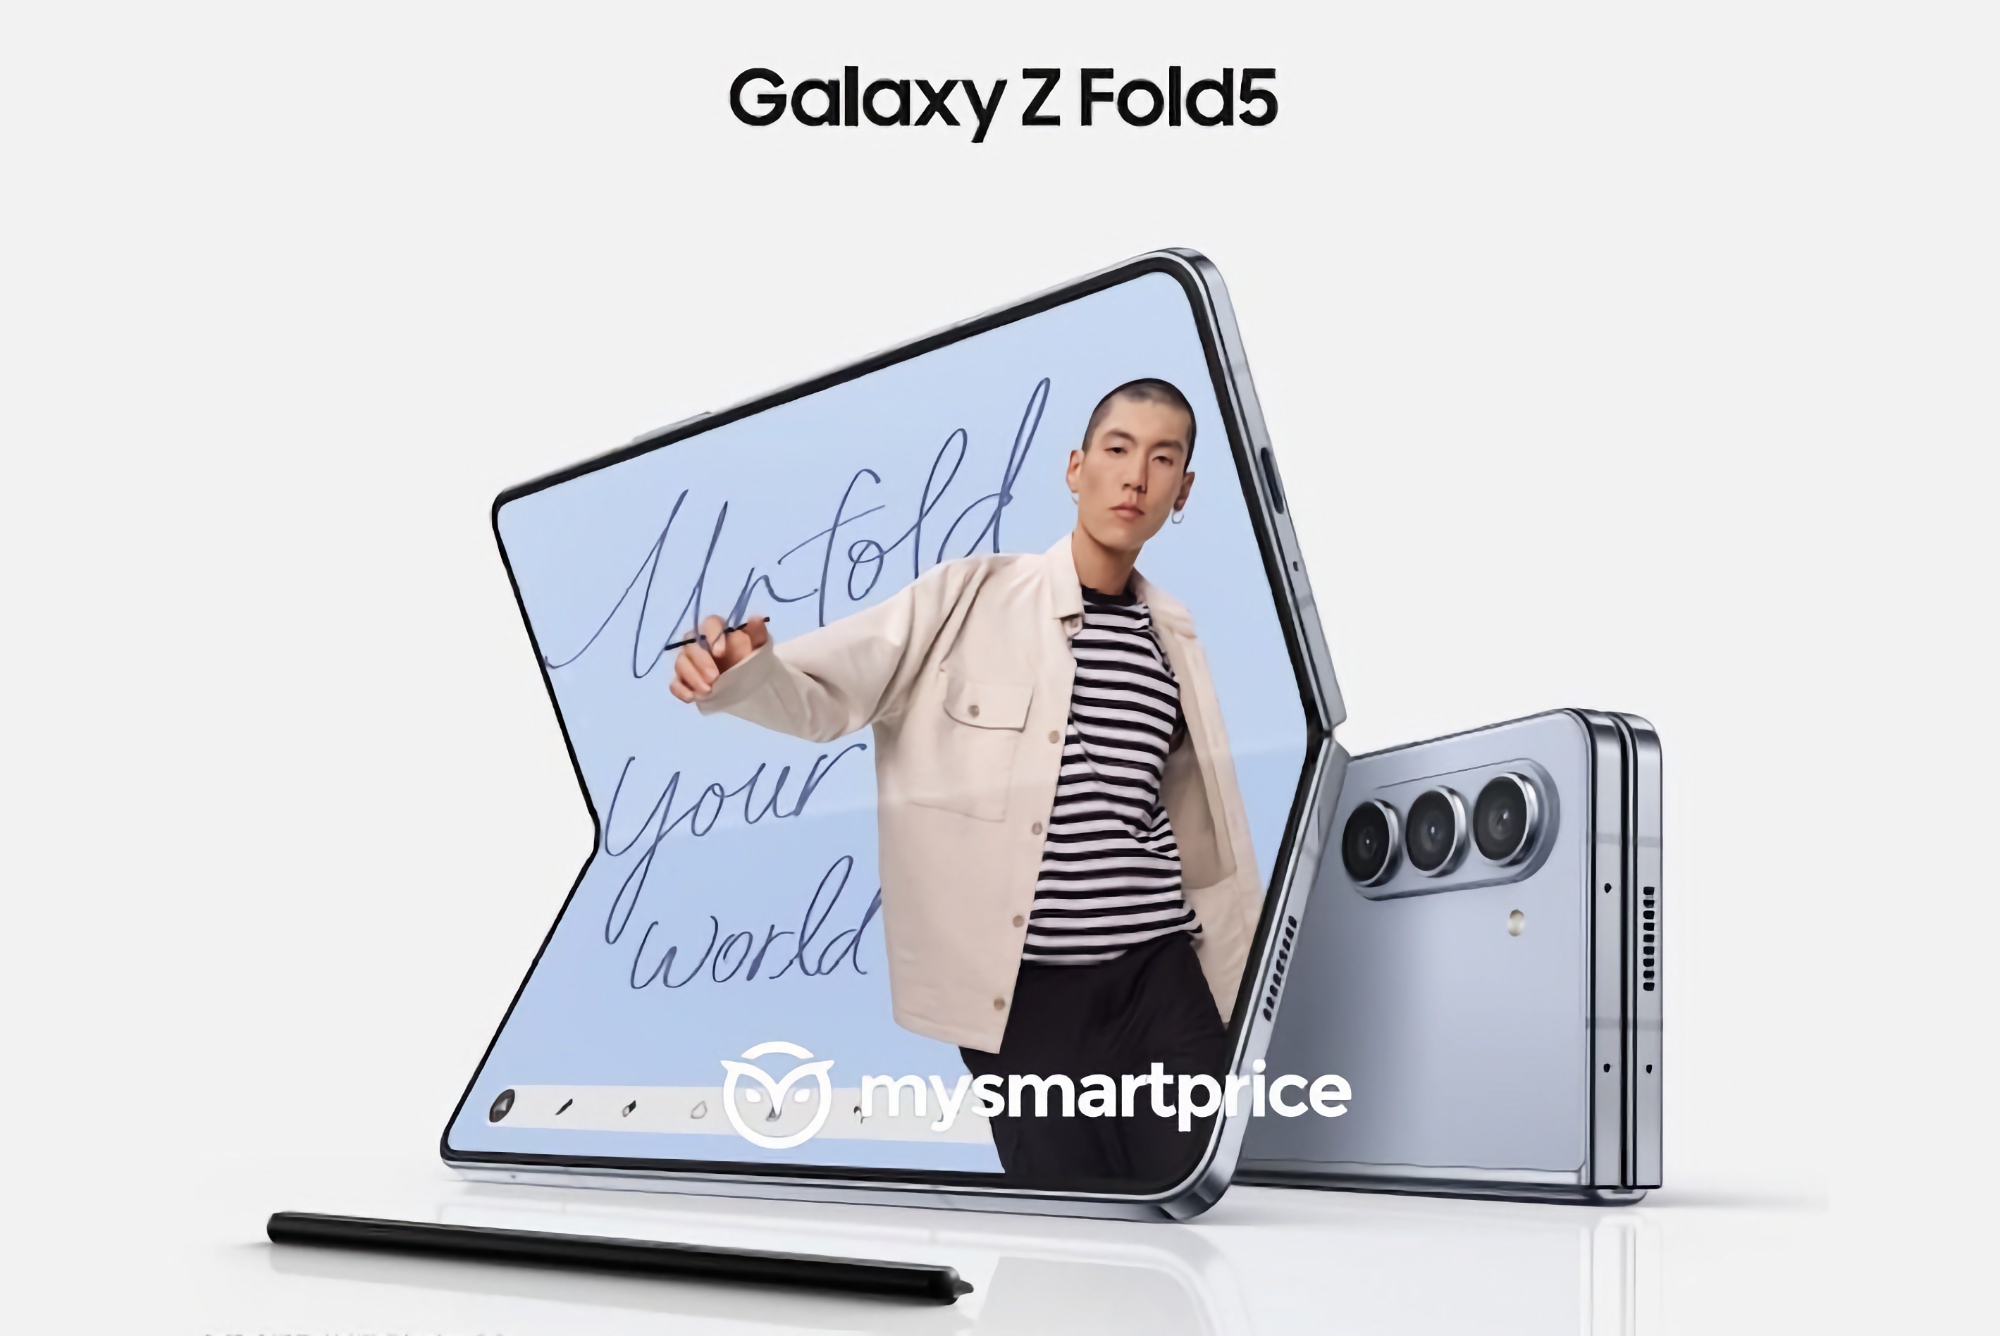 Tańszy niż Samsung Galaxy Fold 4: inider ujawnia, ile będzie kosztował składany smartfon Galaxy Fold 5